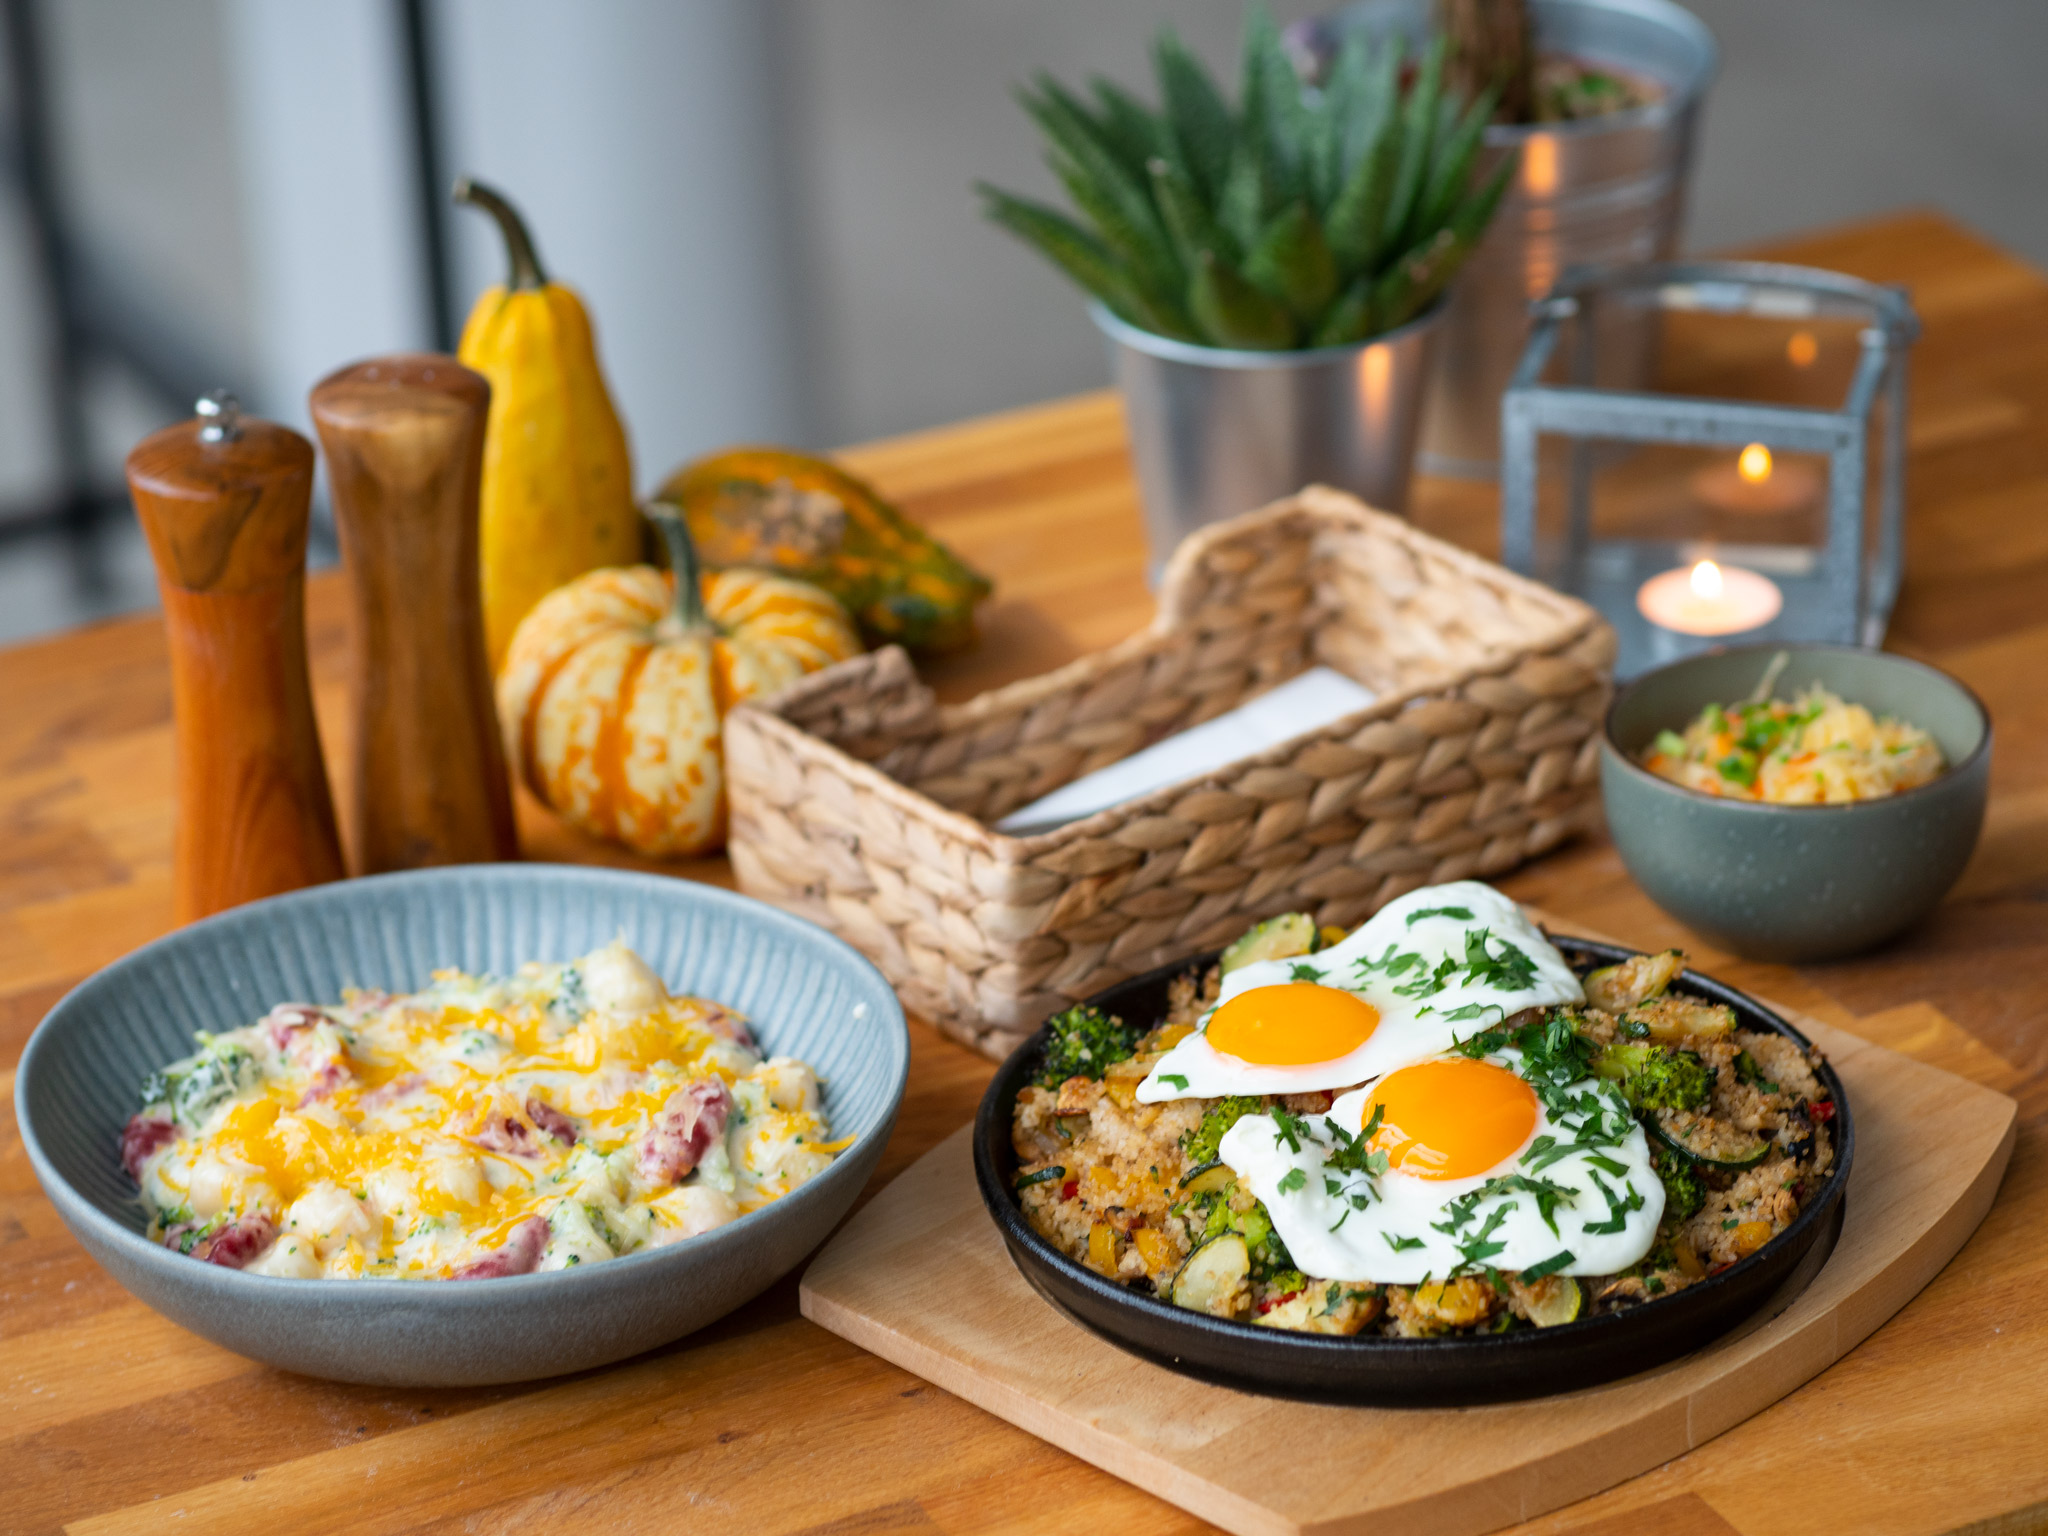 Na zdjęciu widać talerzez jedzeniem ustawione na stole, obok solniczka i pieprzniczka, sztućce i kwiaty